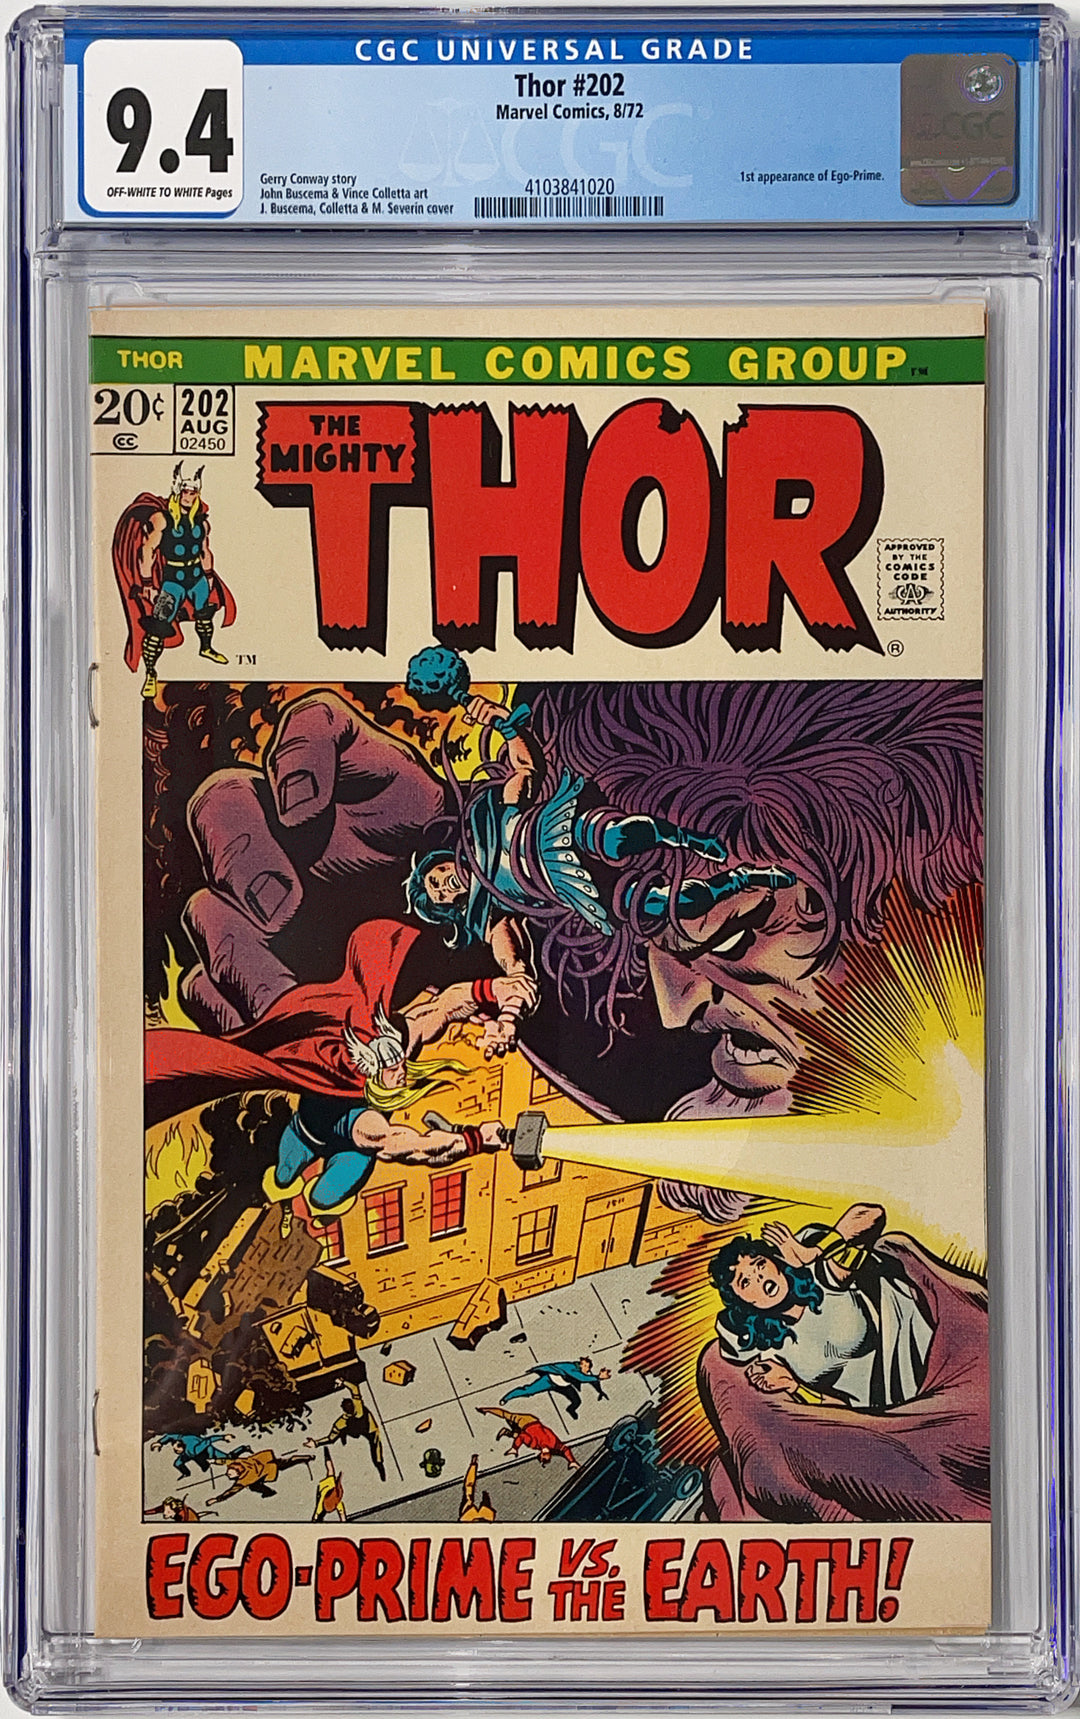 Thor, Vol. 1 #202 - CGC 9.4